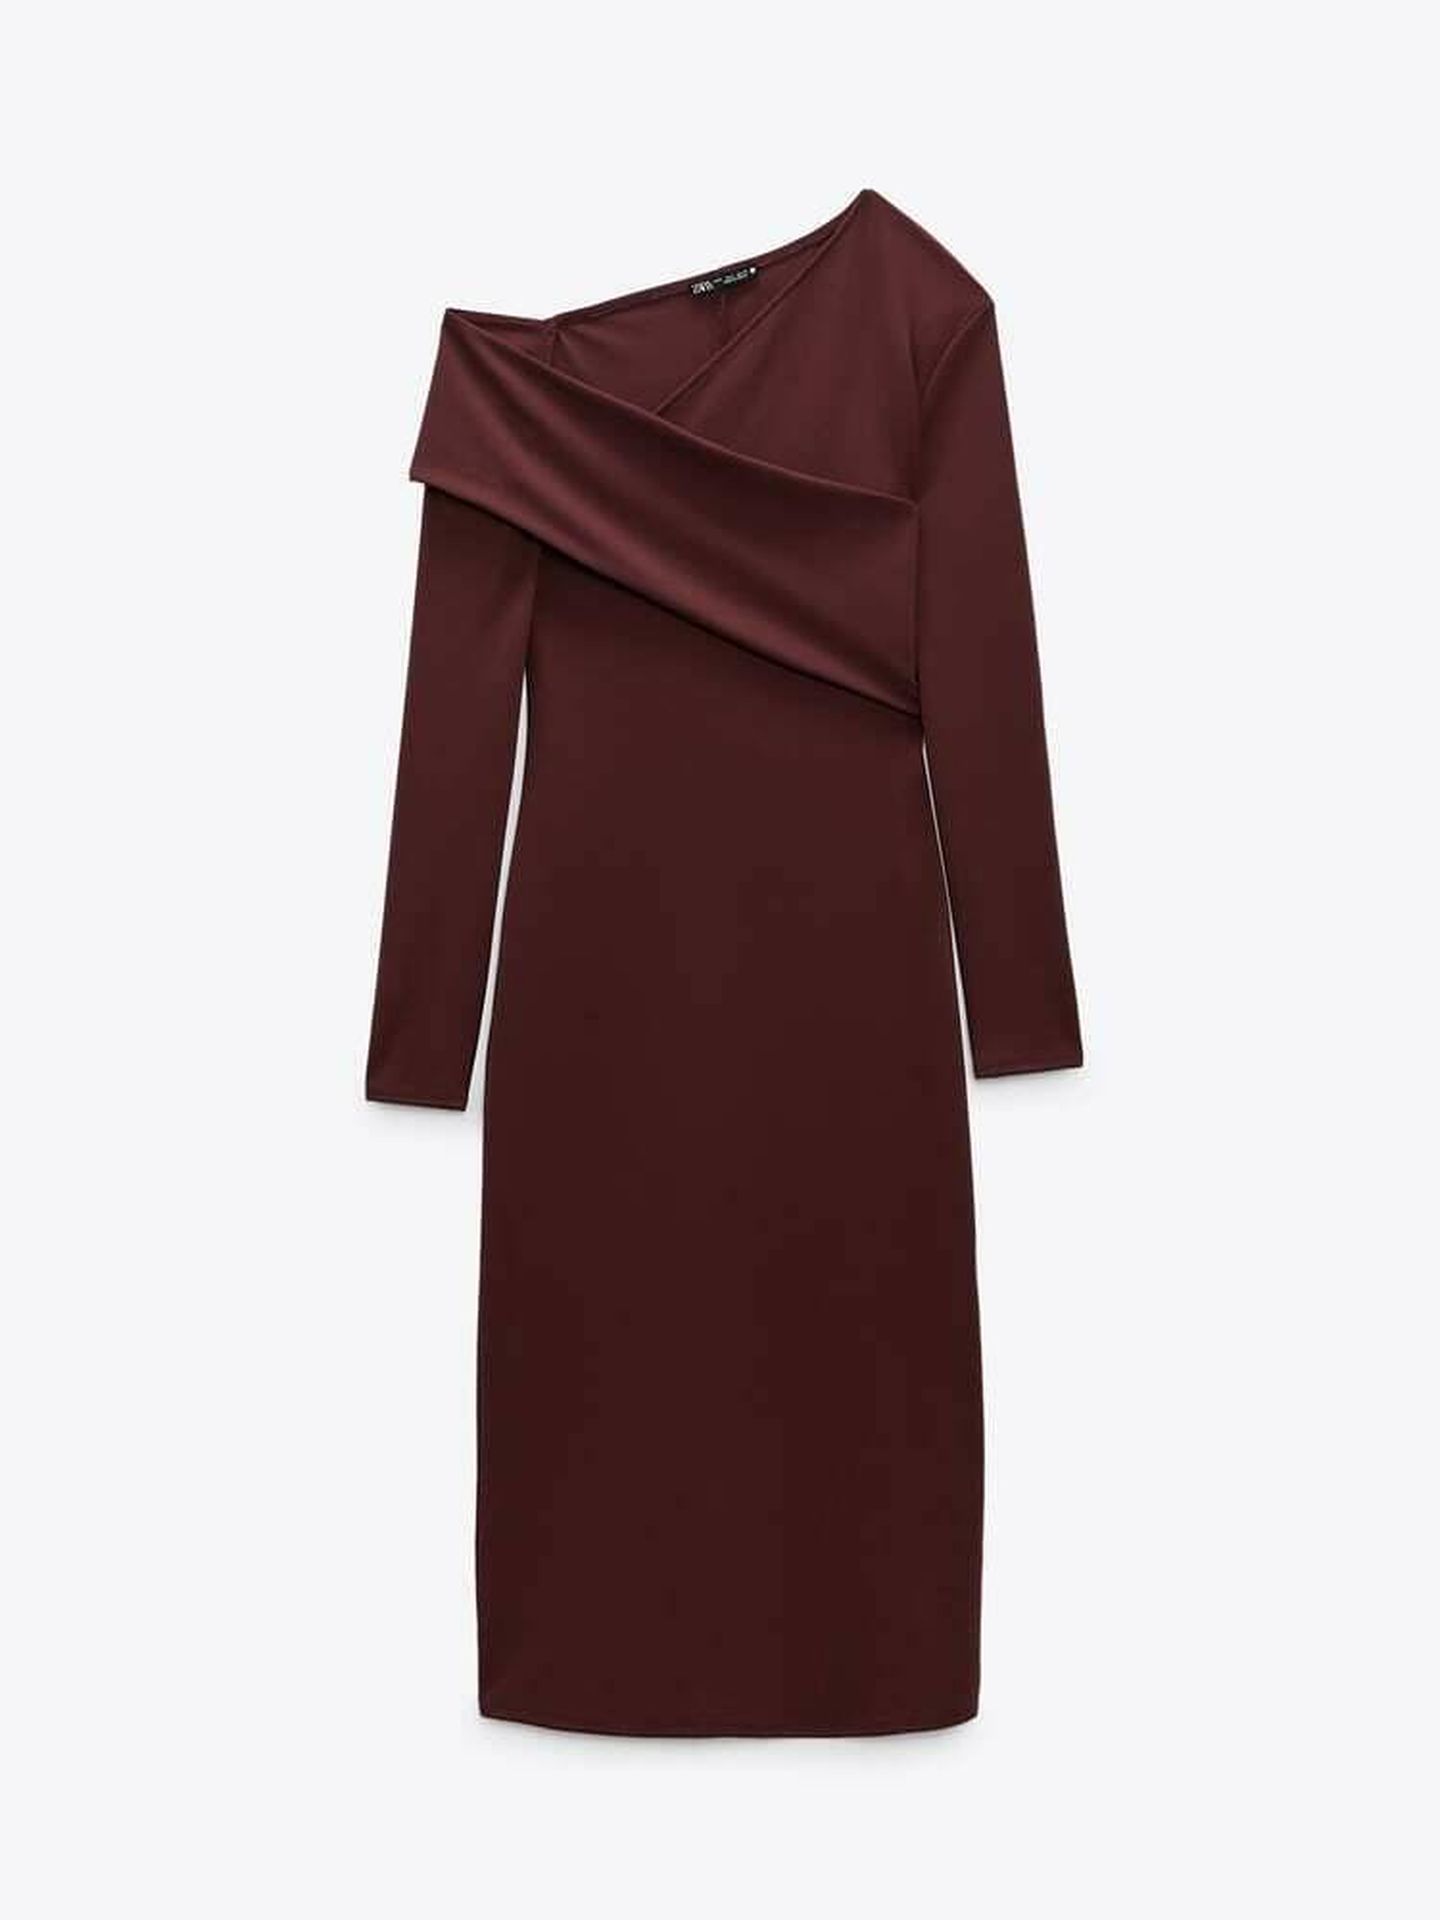 El nuevo vestido asequible de Zara. (Cortesía)